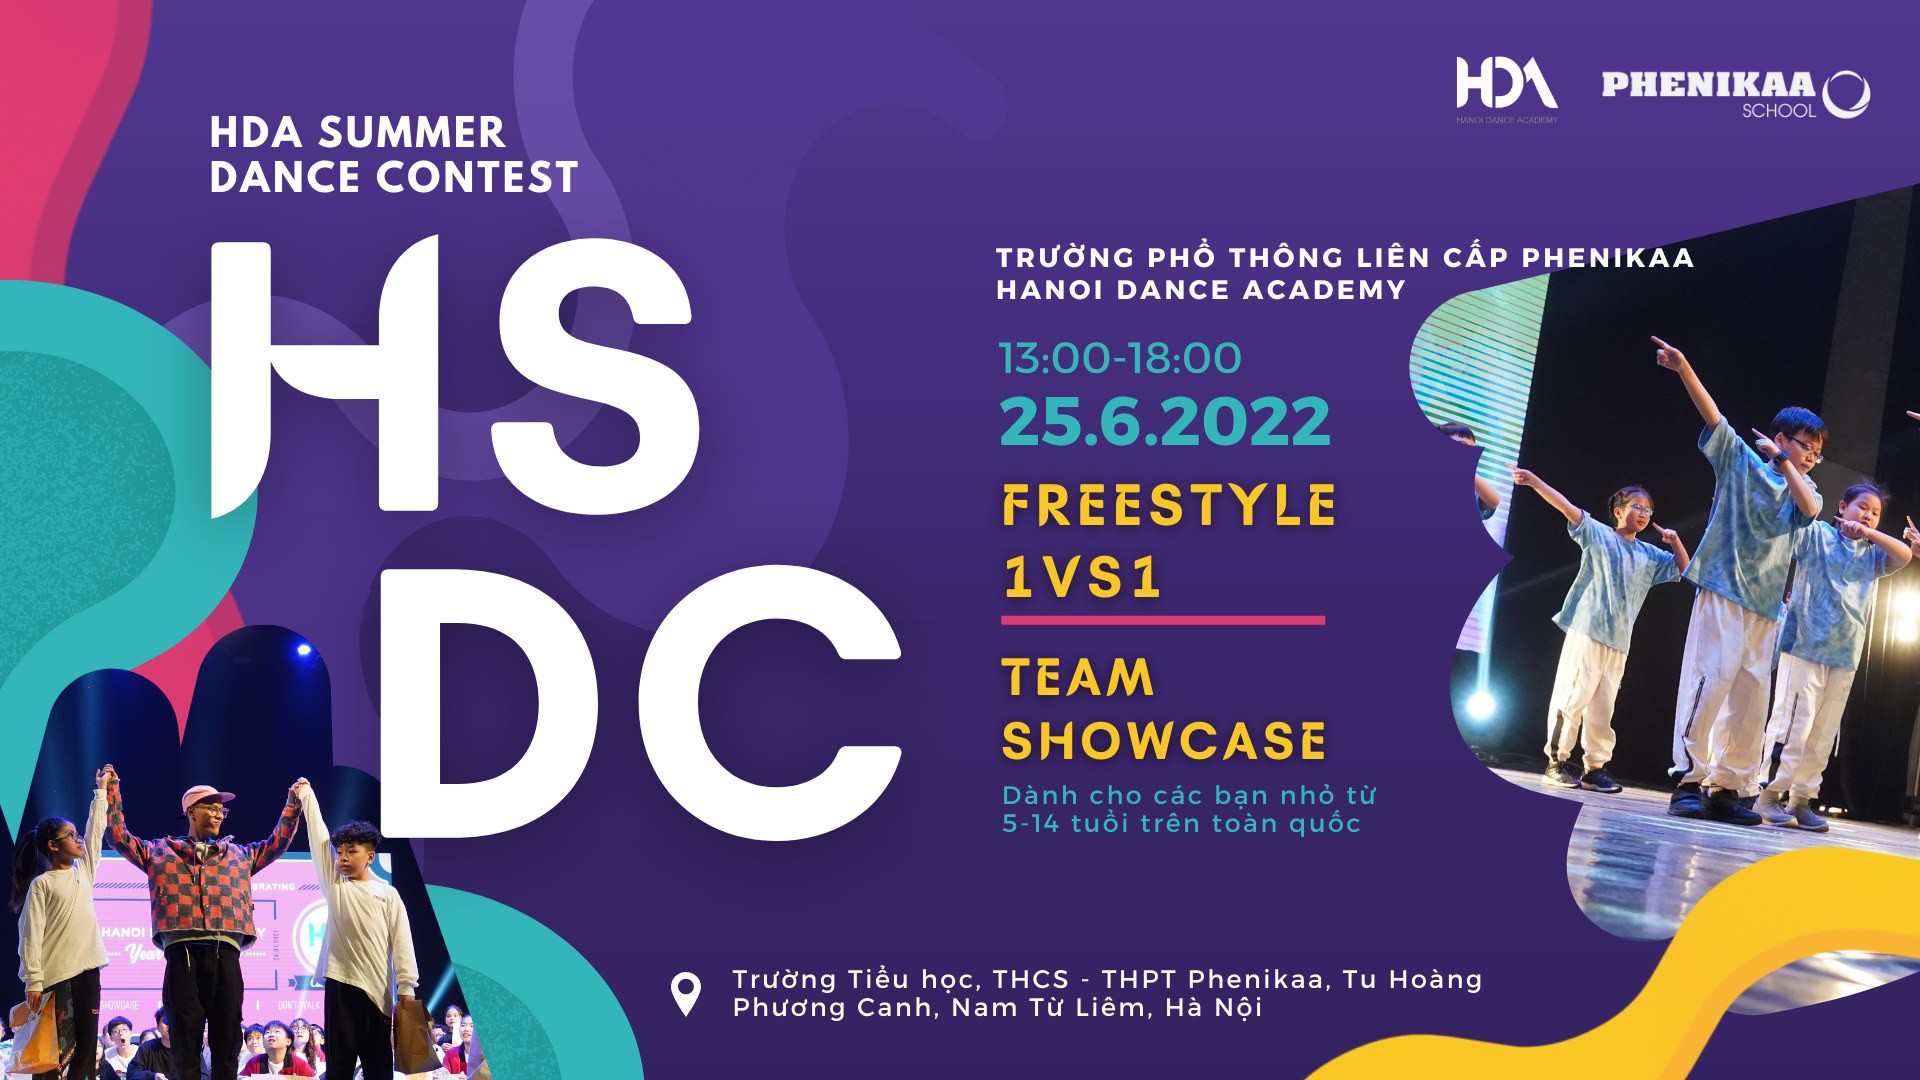 Hanoi Summer Dance Contest - Giải đấu nhảy cho các bạn Kids tài năng 